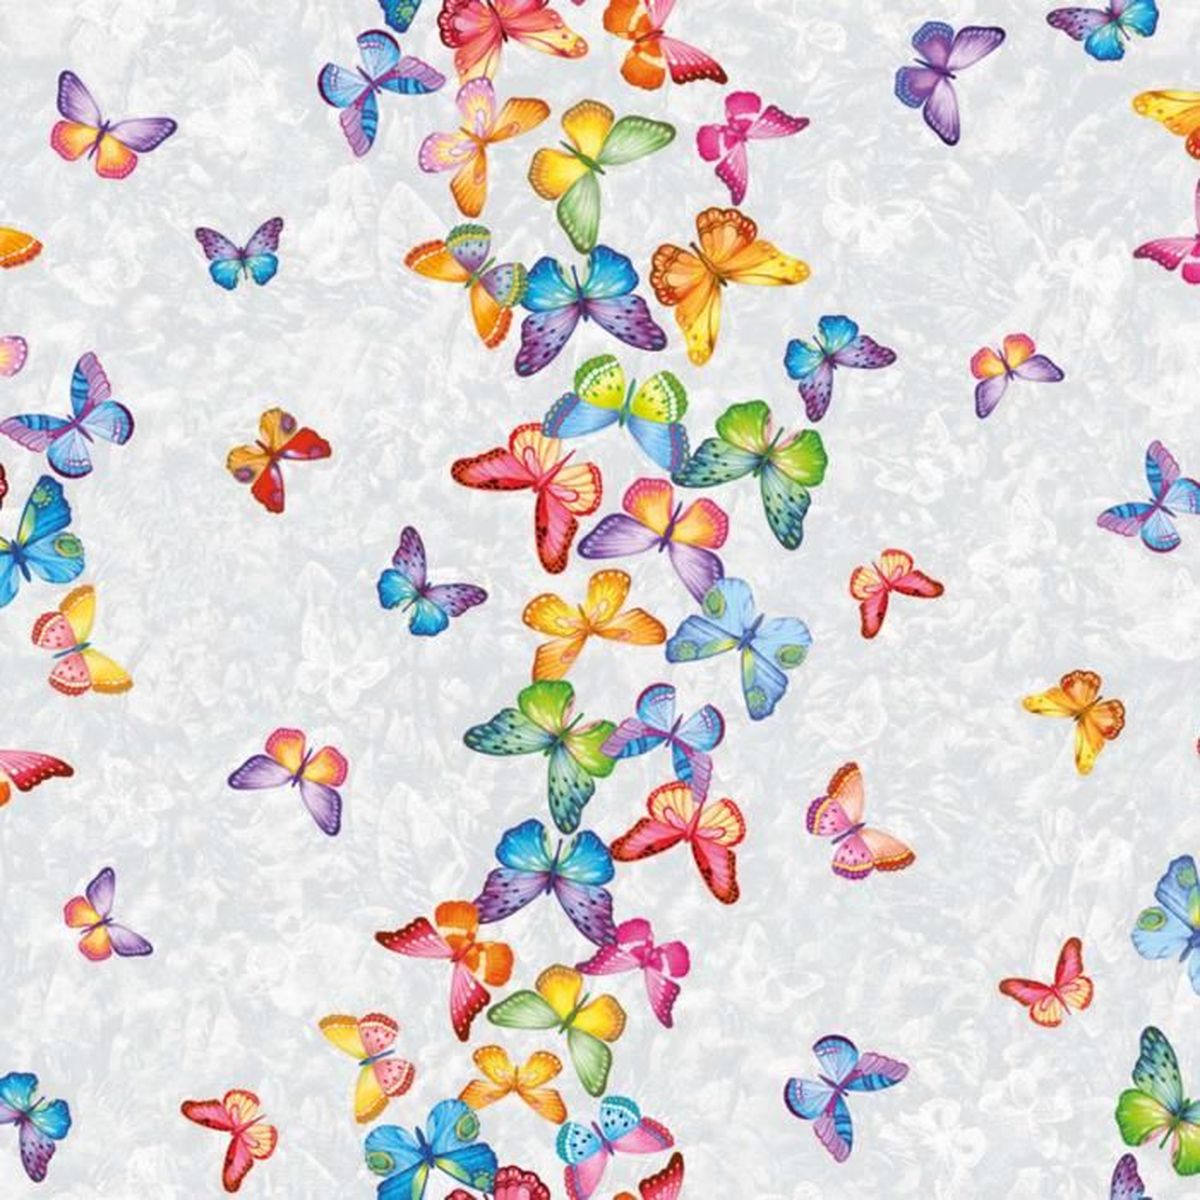 Toile cirée 100 x 140cm Motif papillons et fleurs des champs Taille au choix Lavable Mit Muster Beige Nappe en toile cirée